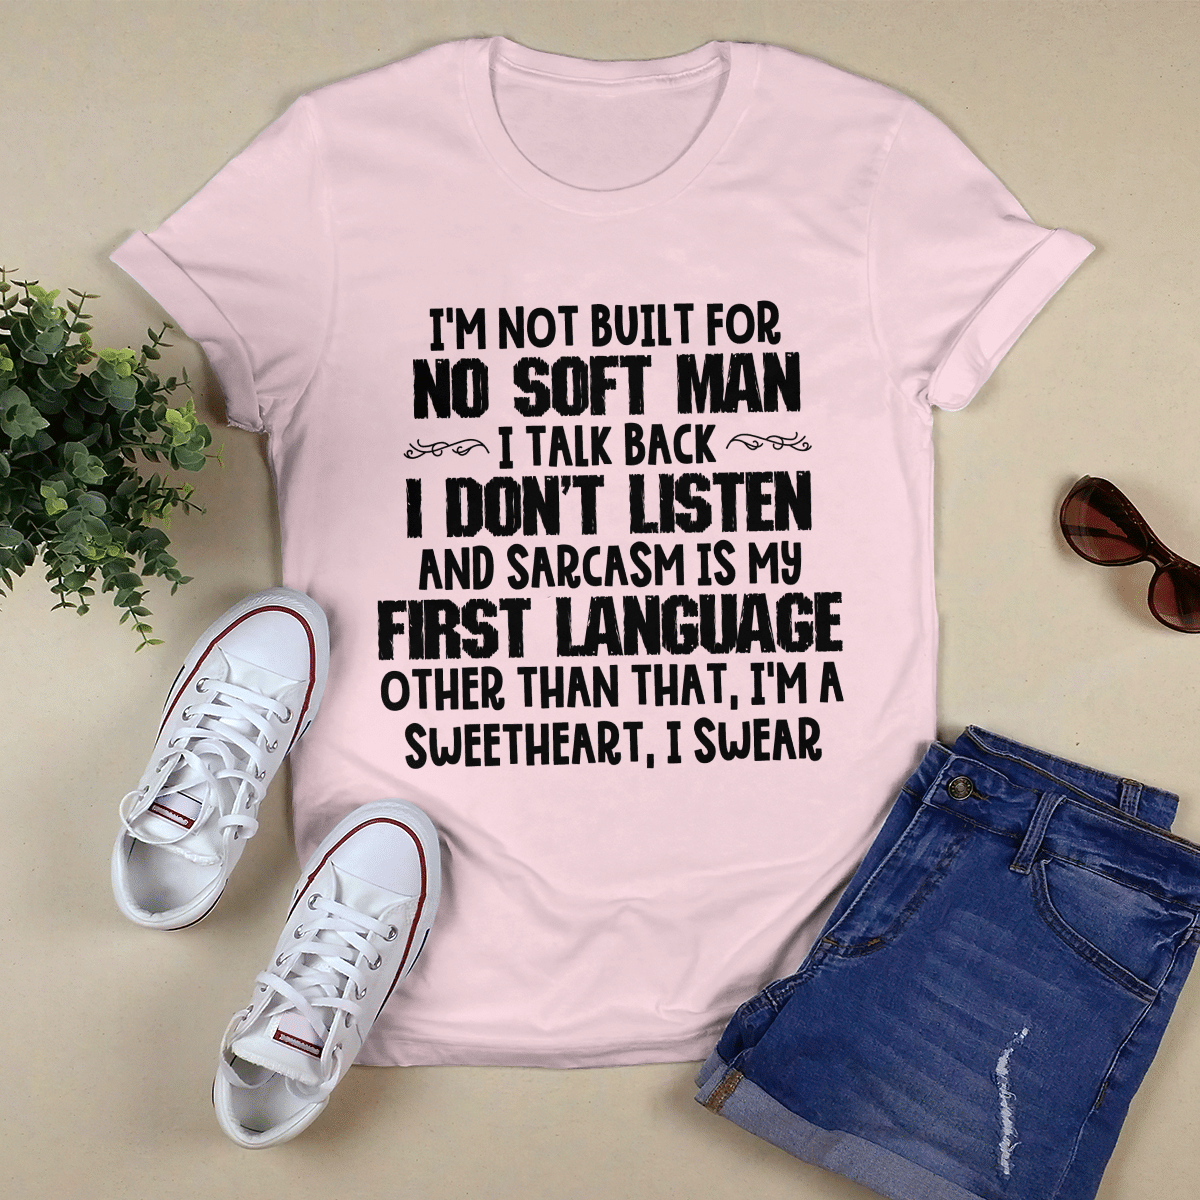 I_m Not Built For No Soft Man shirt